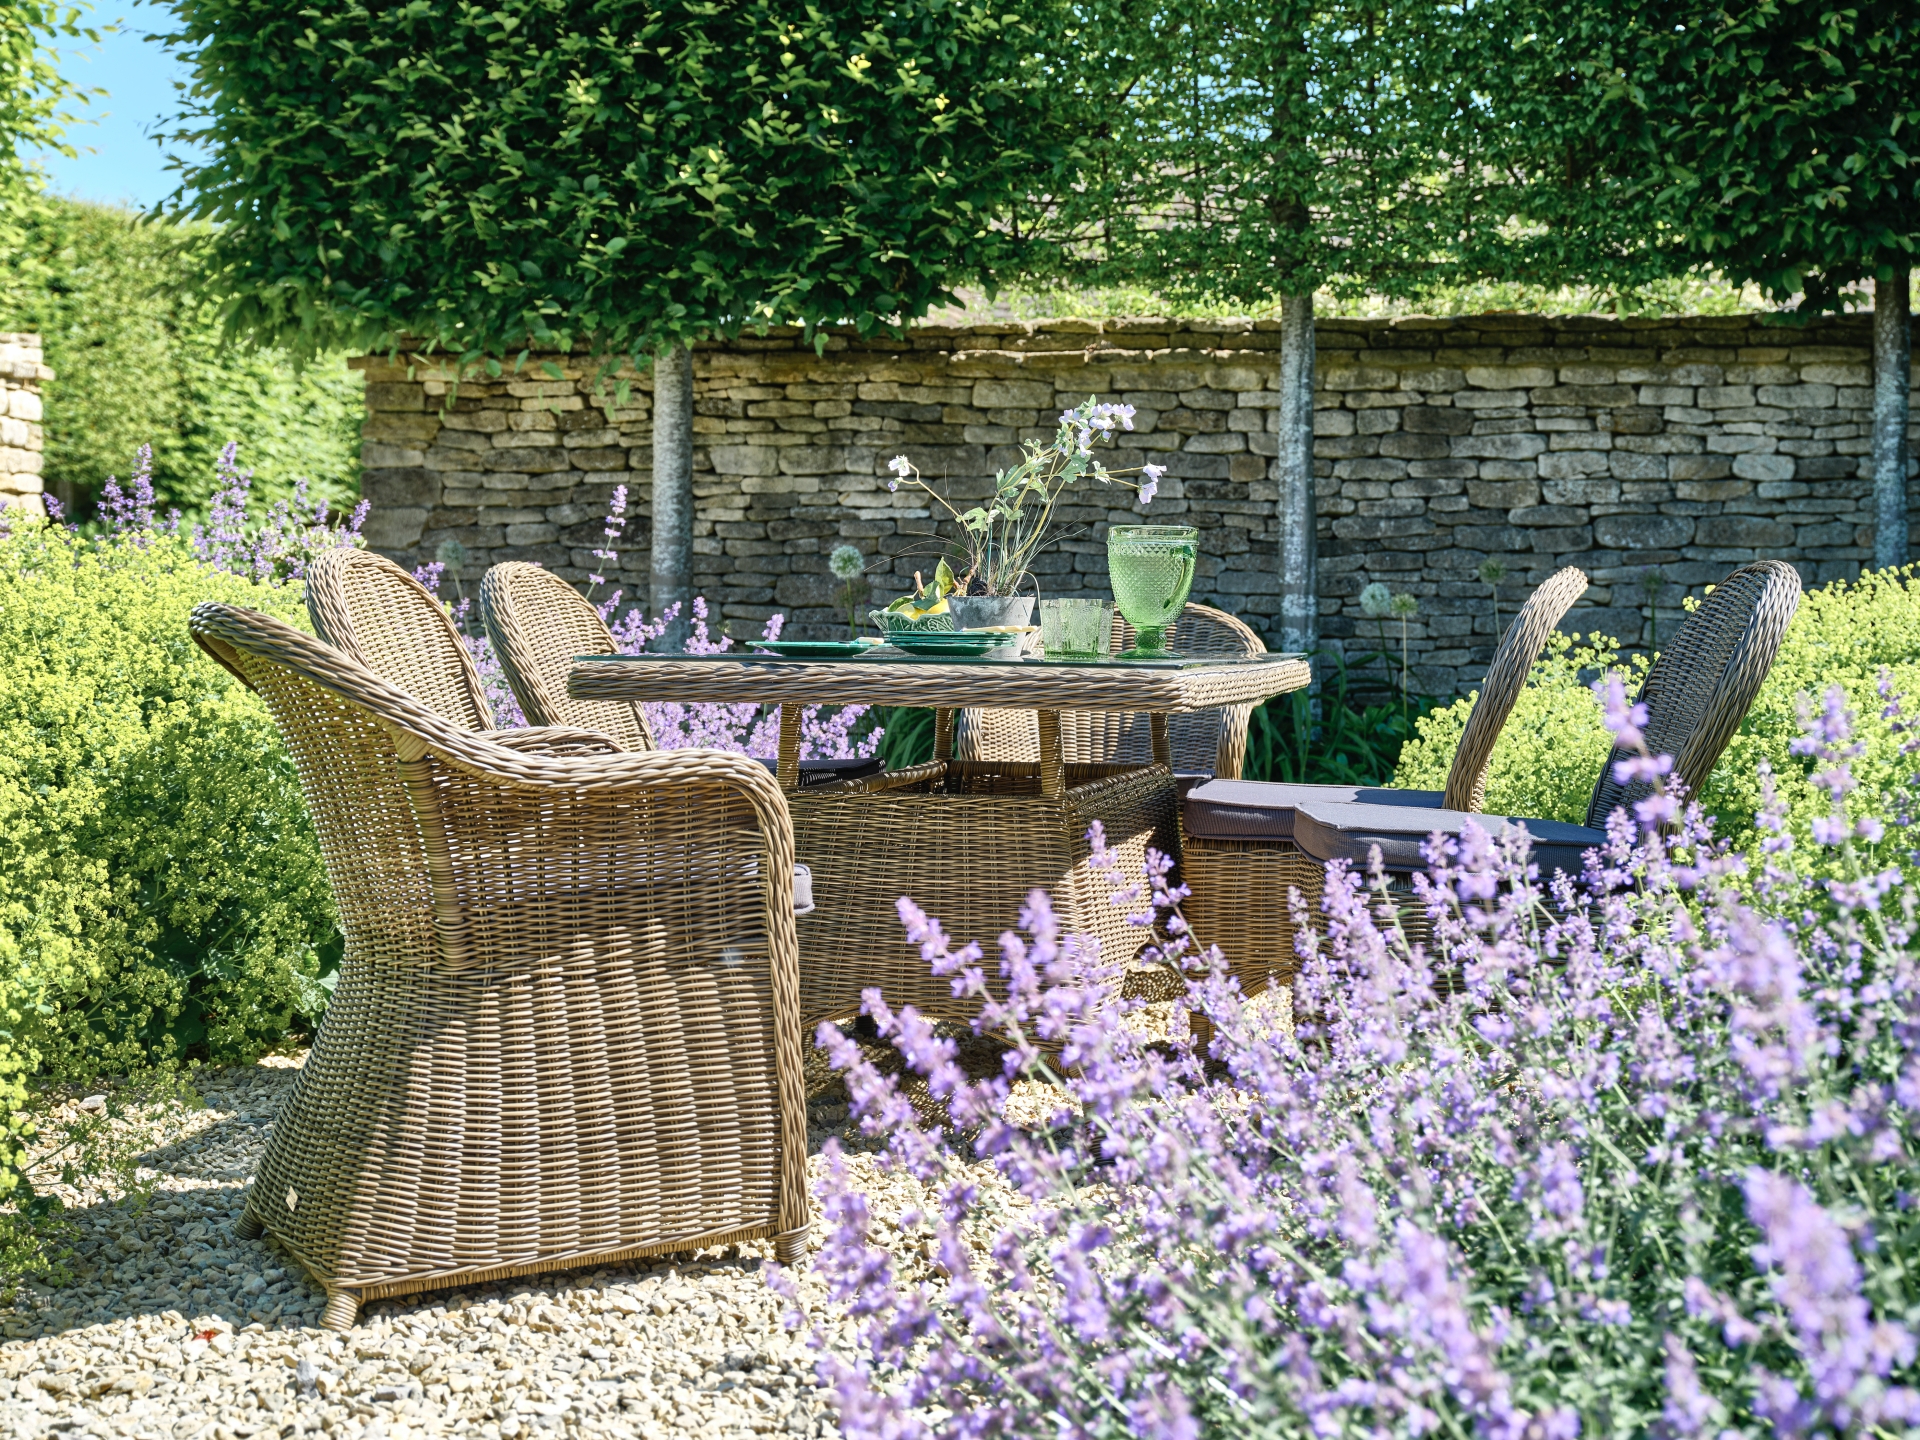 rattan garden furniture in courtyard garden with lavender